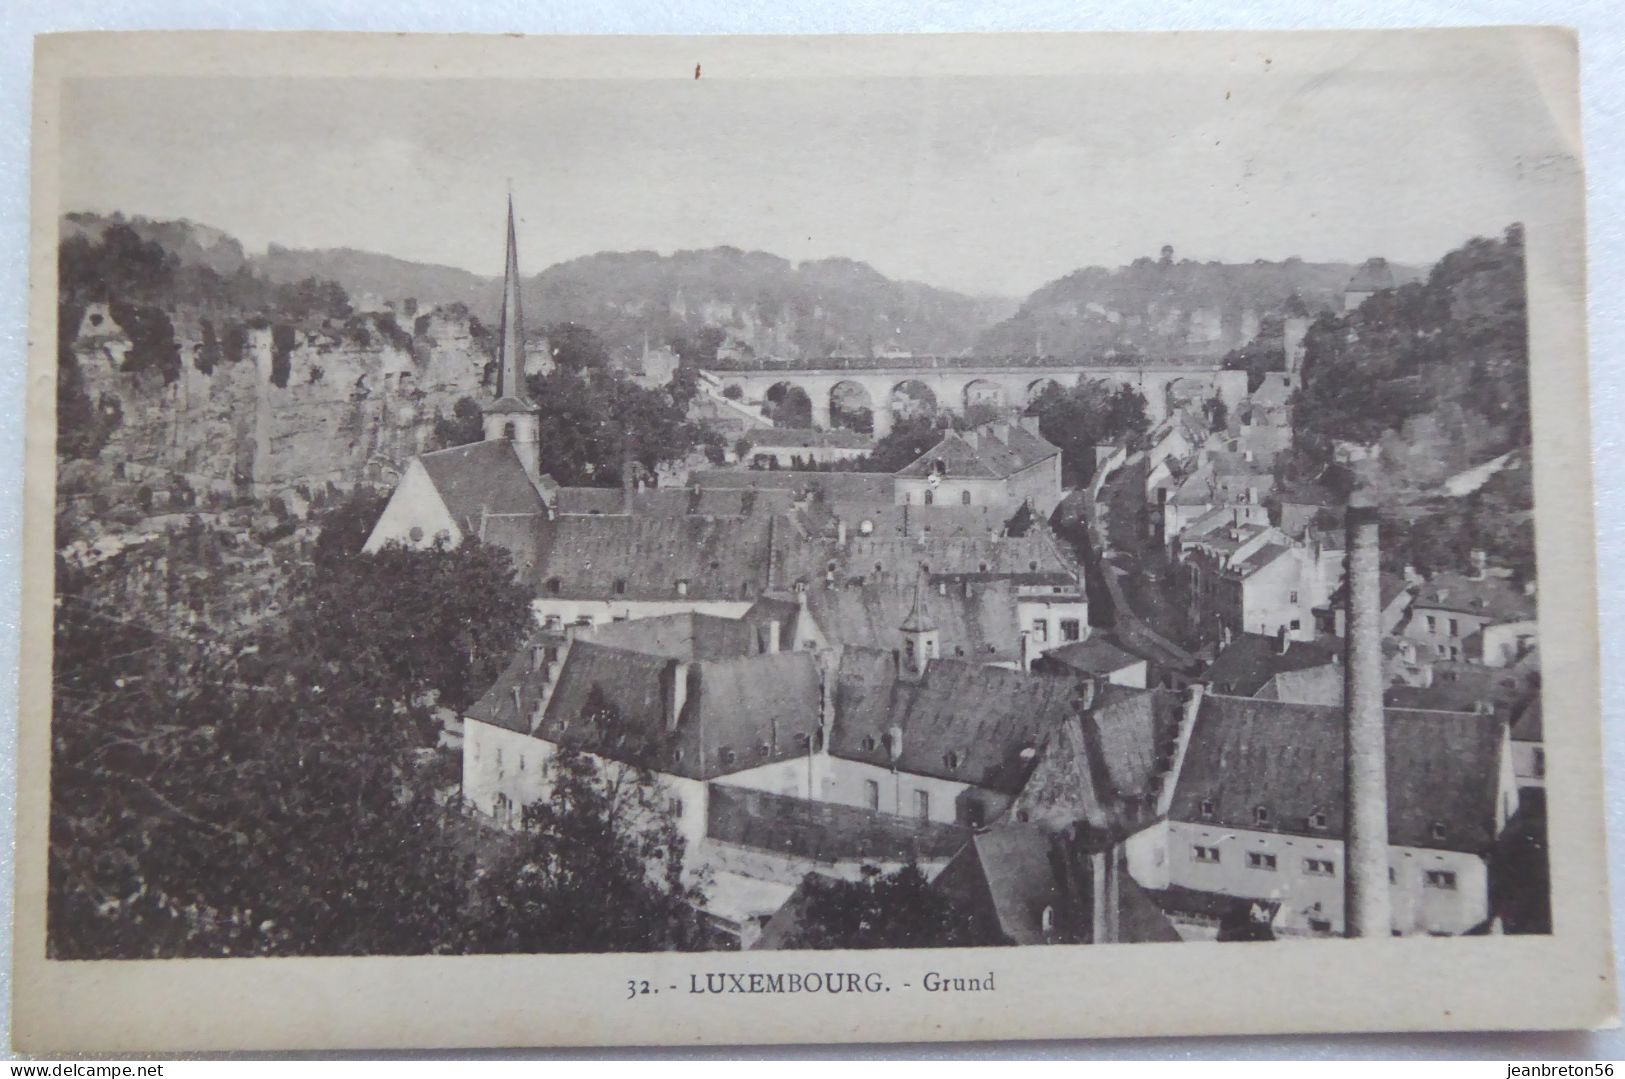 LUXEMBOURG. - Grund - CPA 1922 - Luxemburg - Stadt